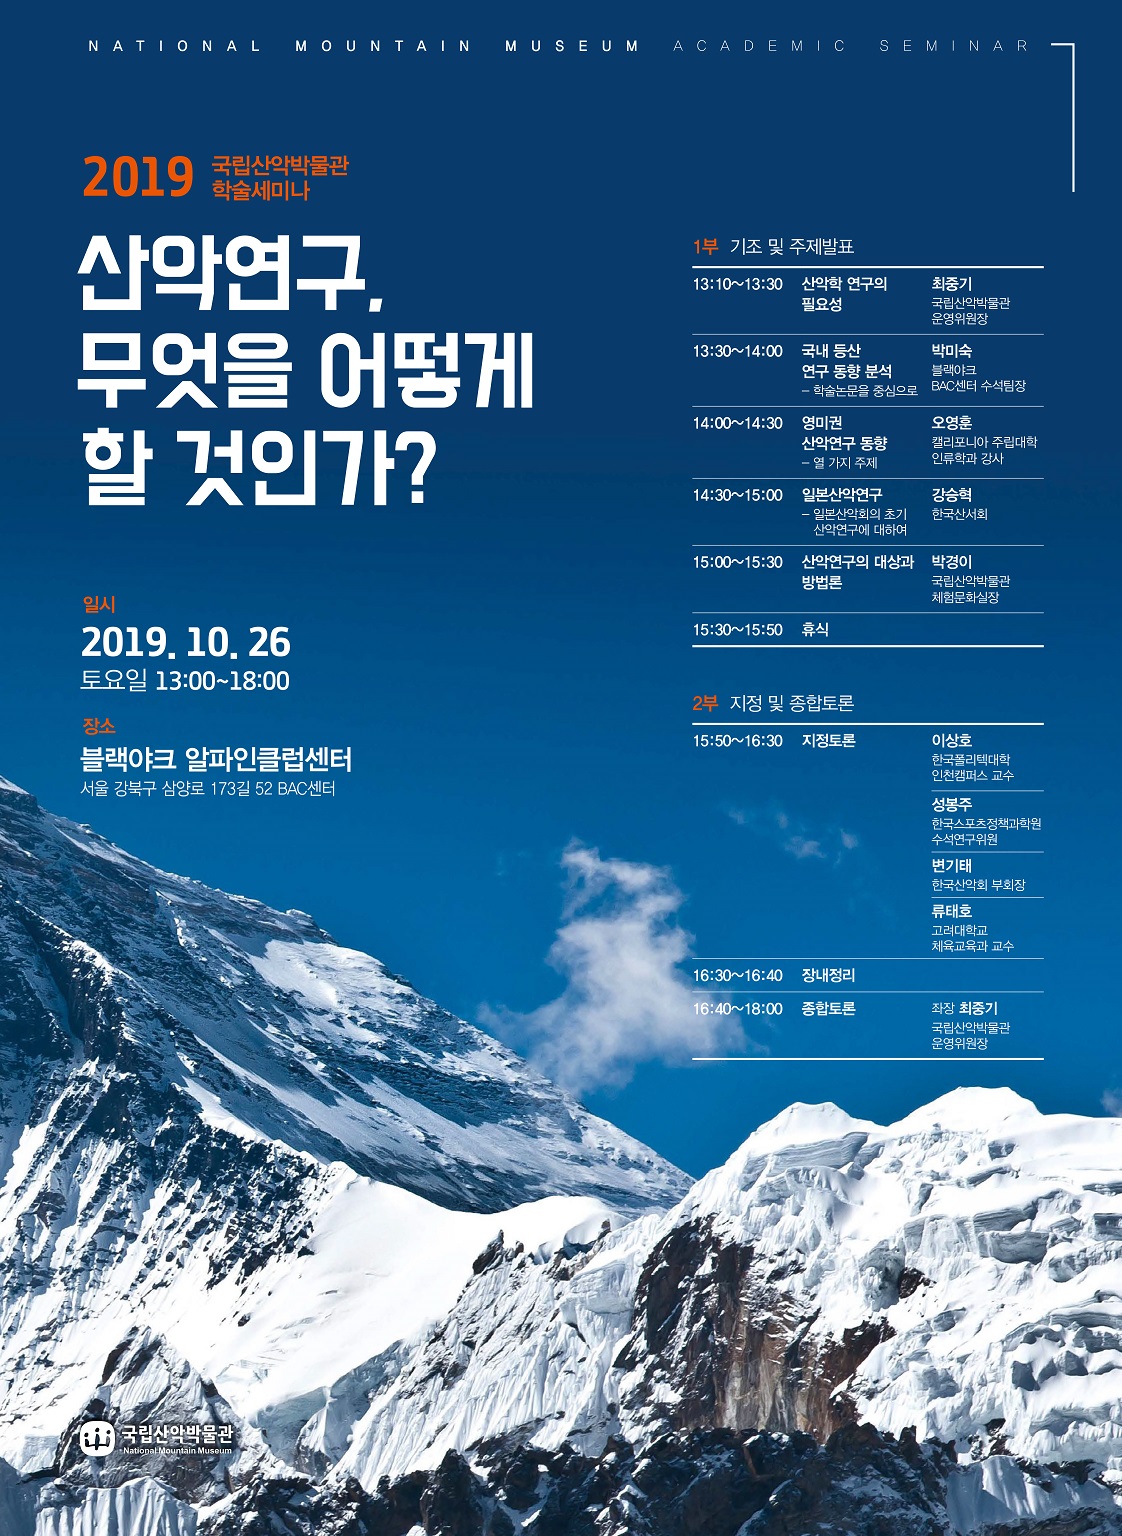 2019 산림청 산악박물관 학술세미나 개최(10.26)